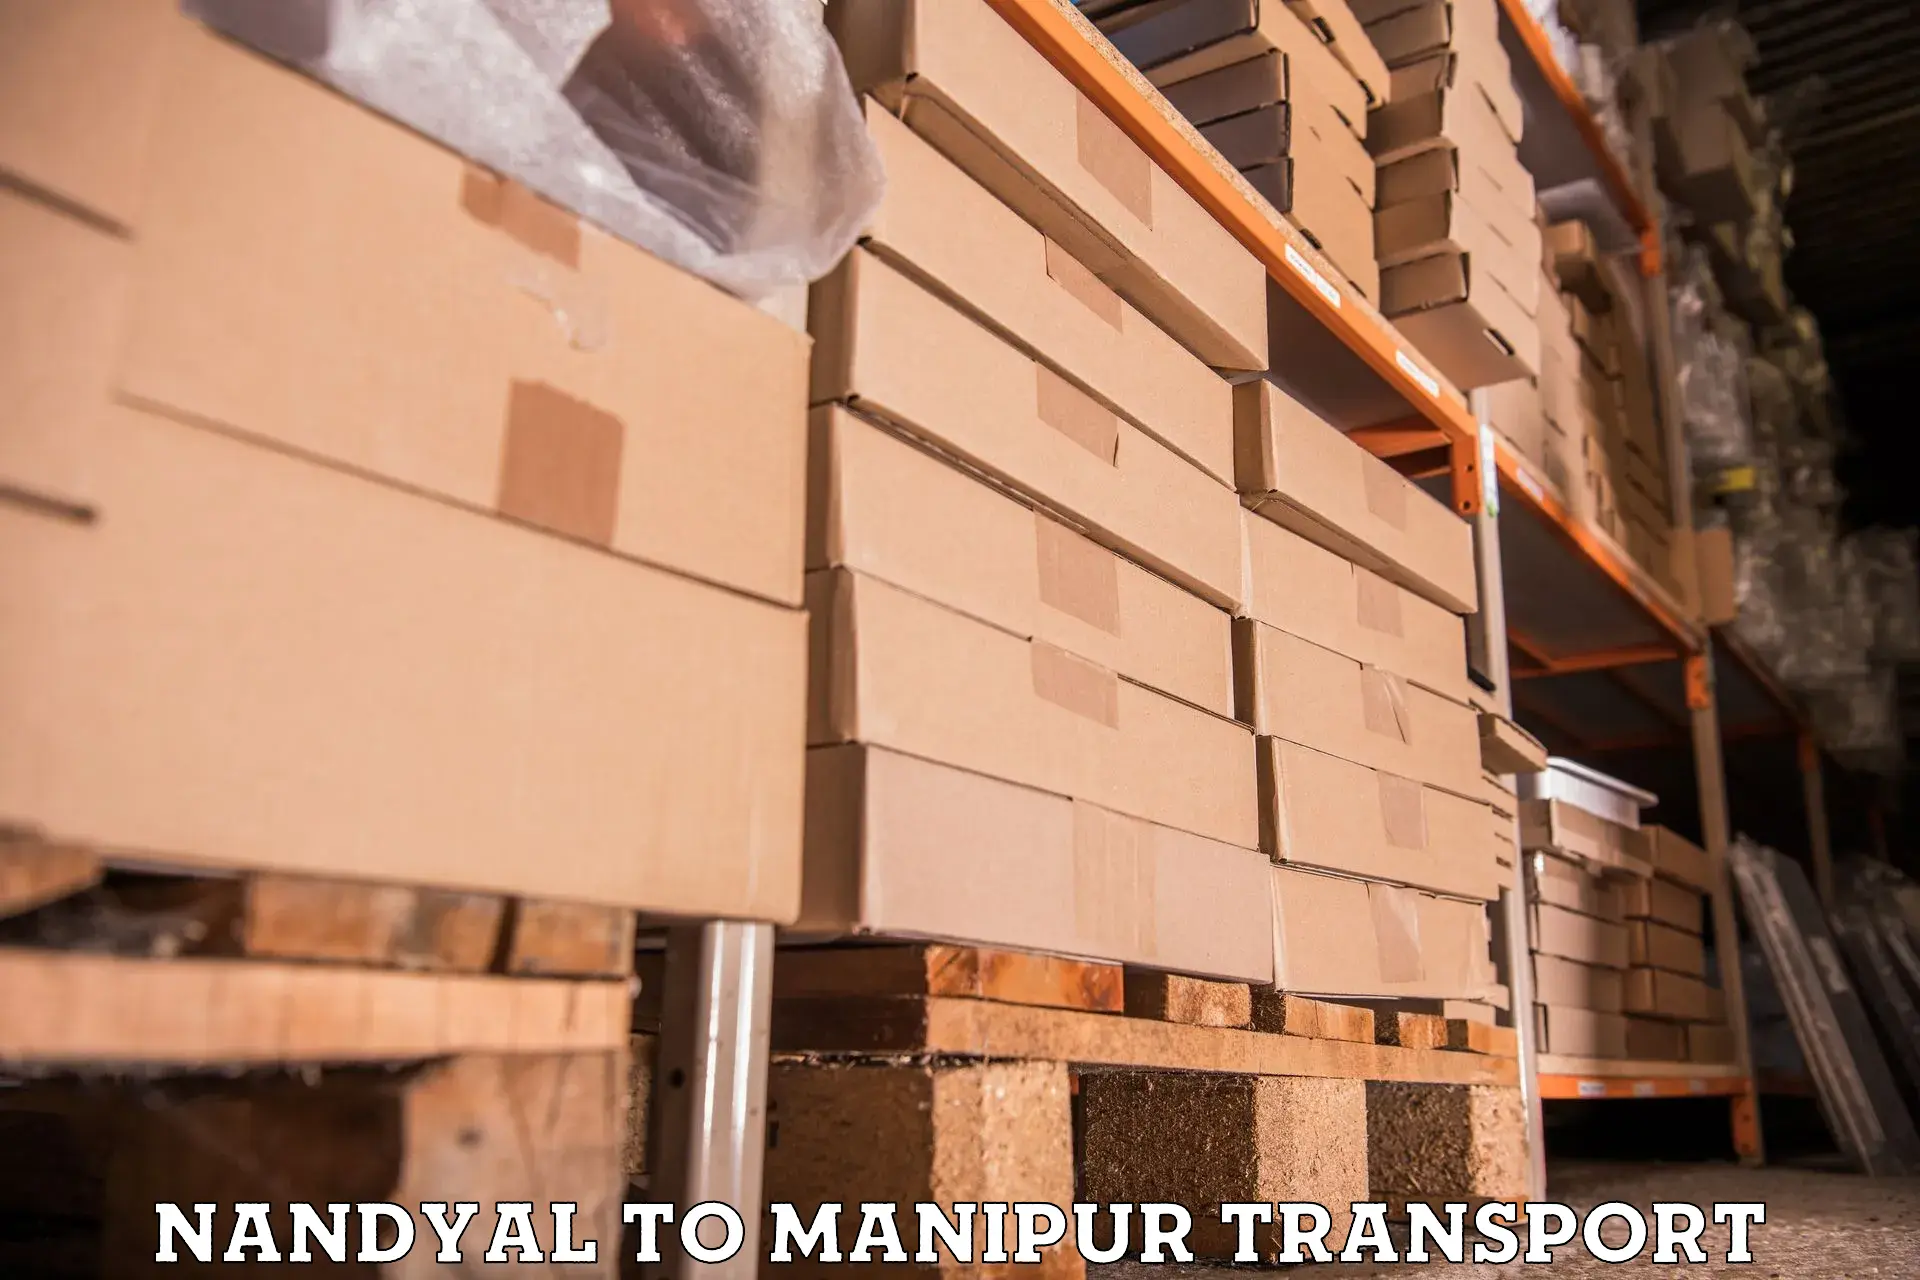 Online transport service Nandyal to Manipur